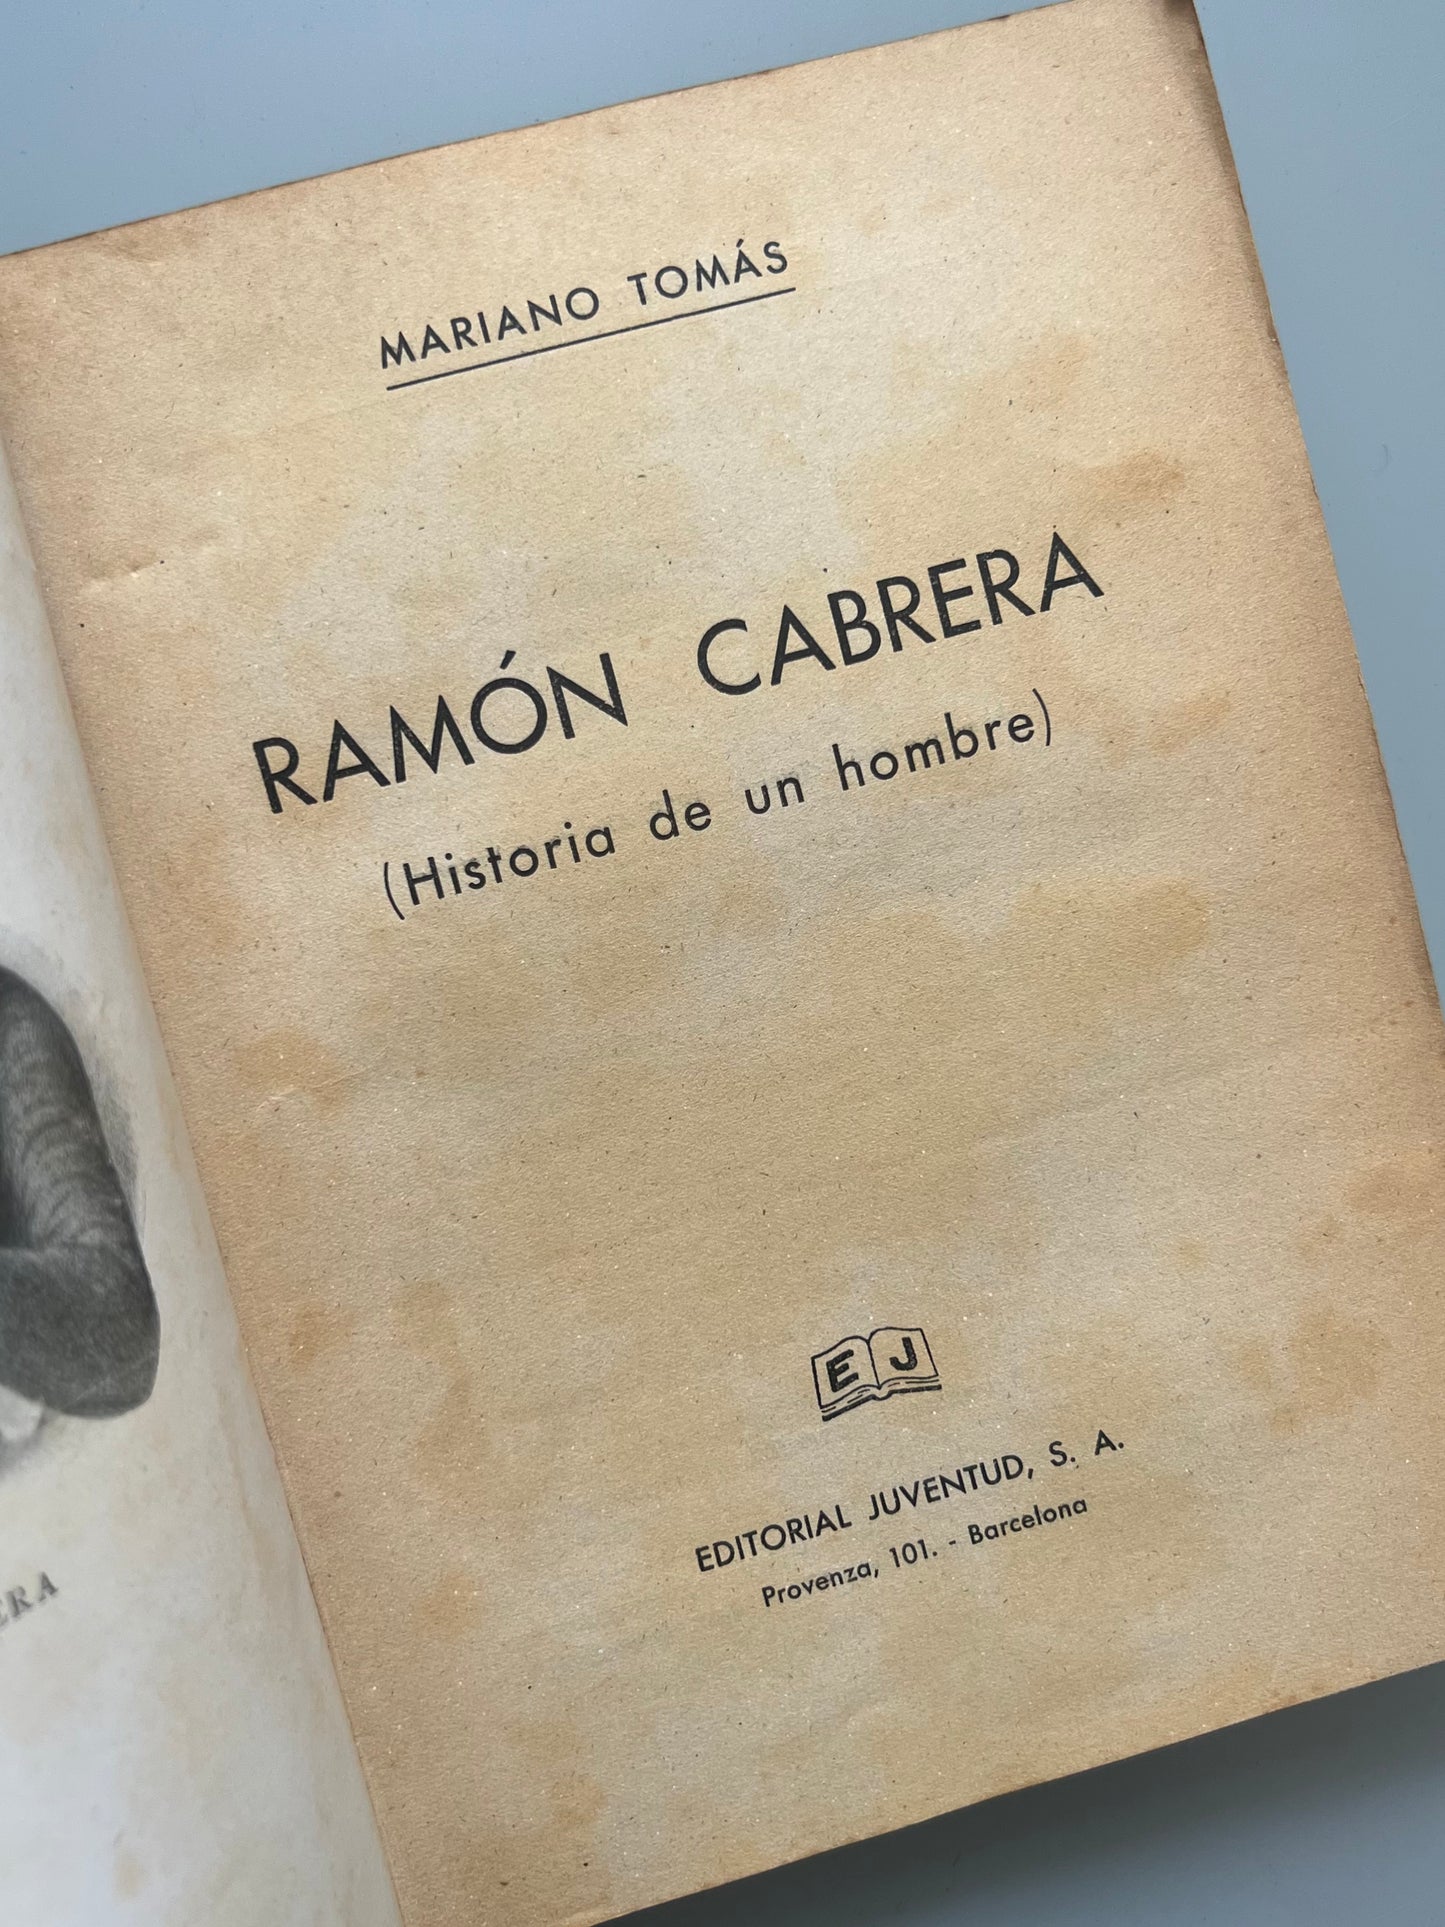 Ramón Cabrera, Mariano Tomás - Editorial Juventud, 1939